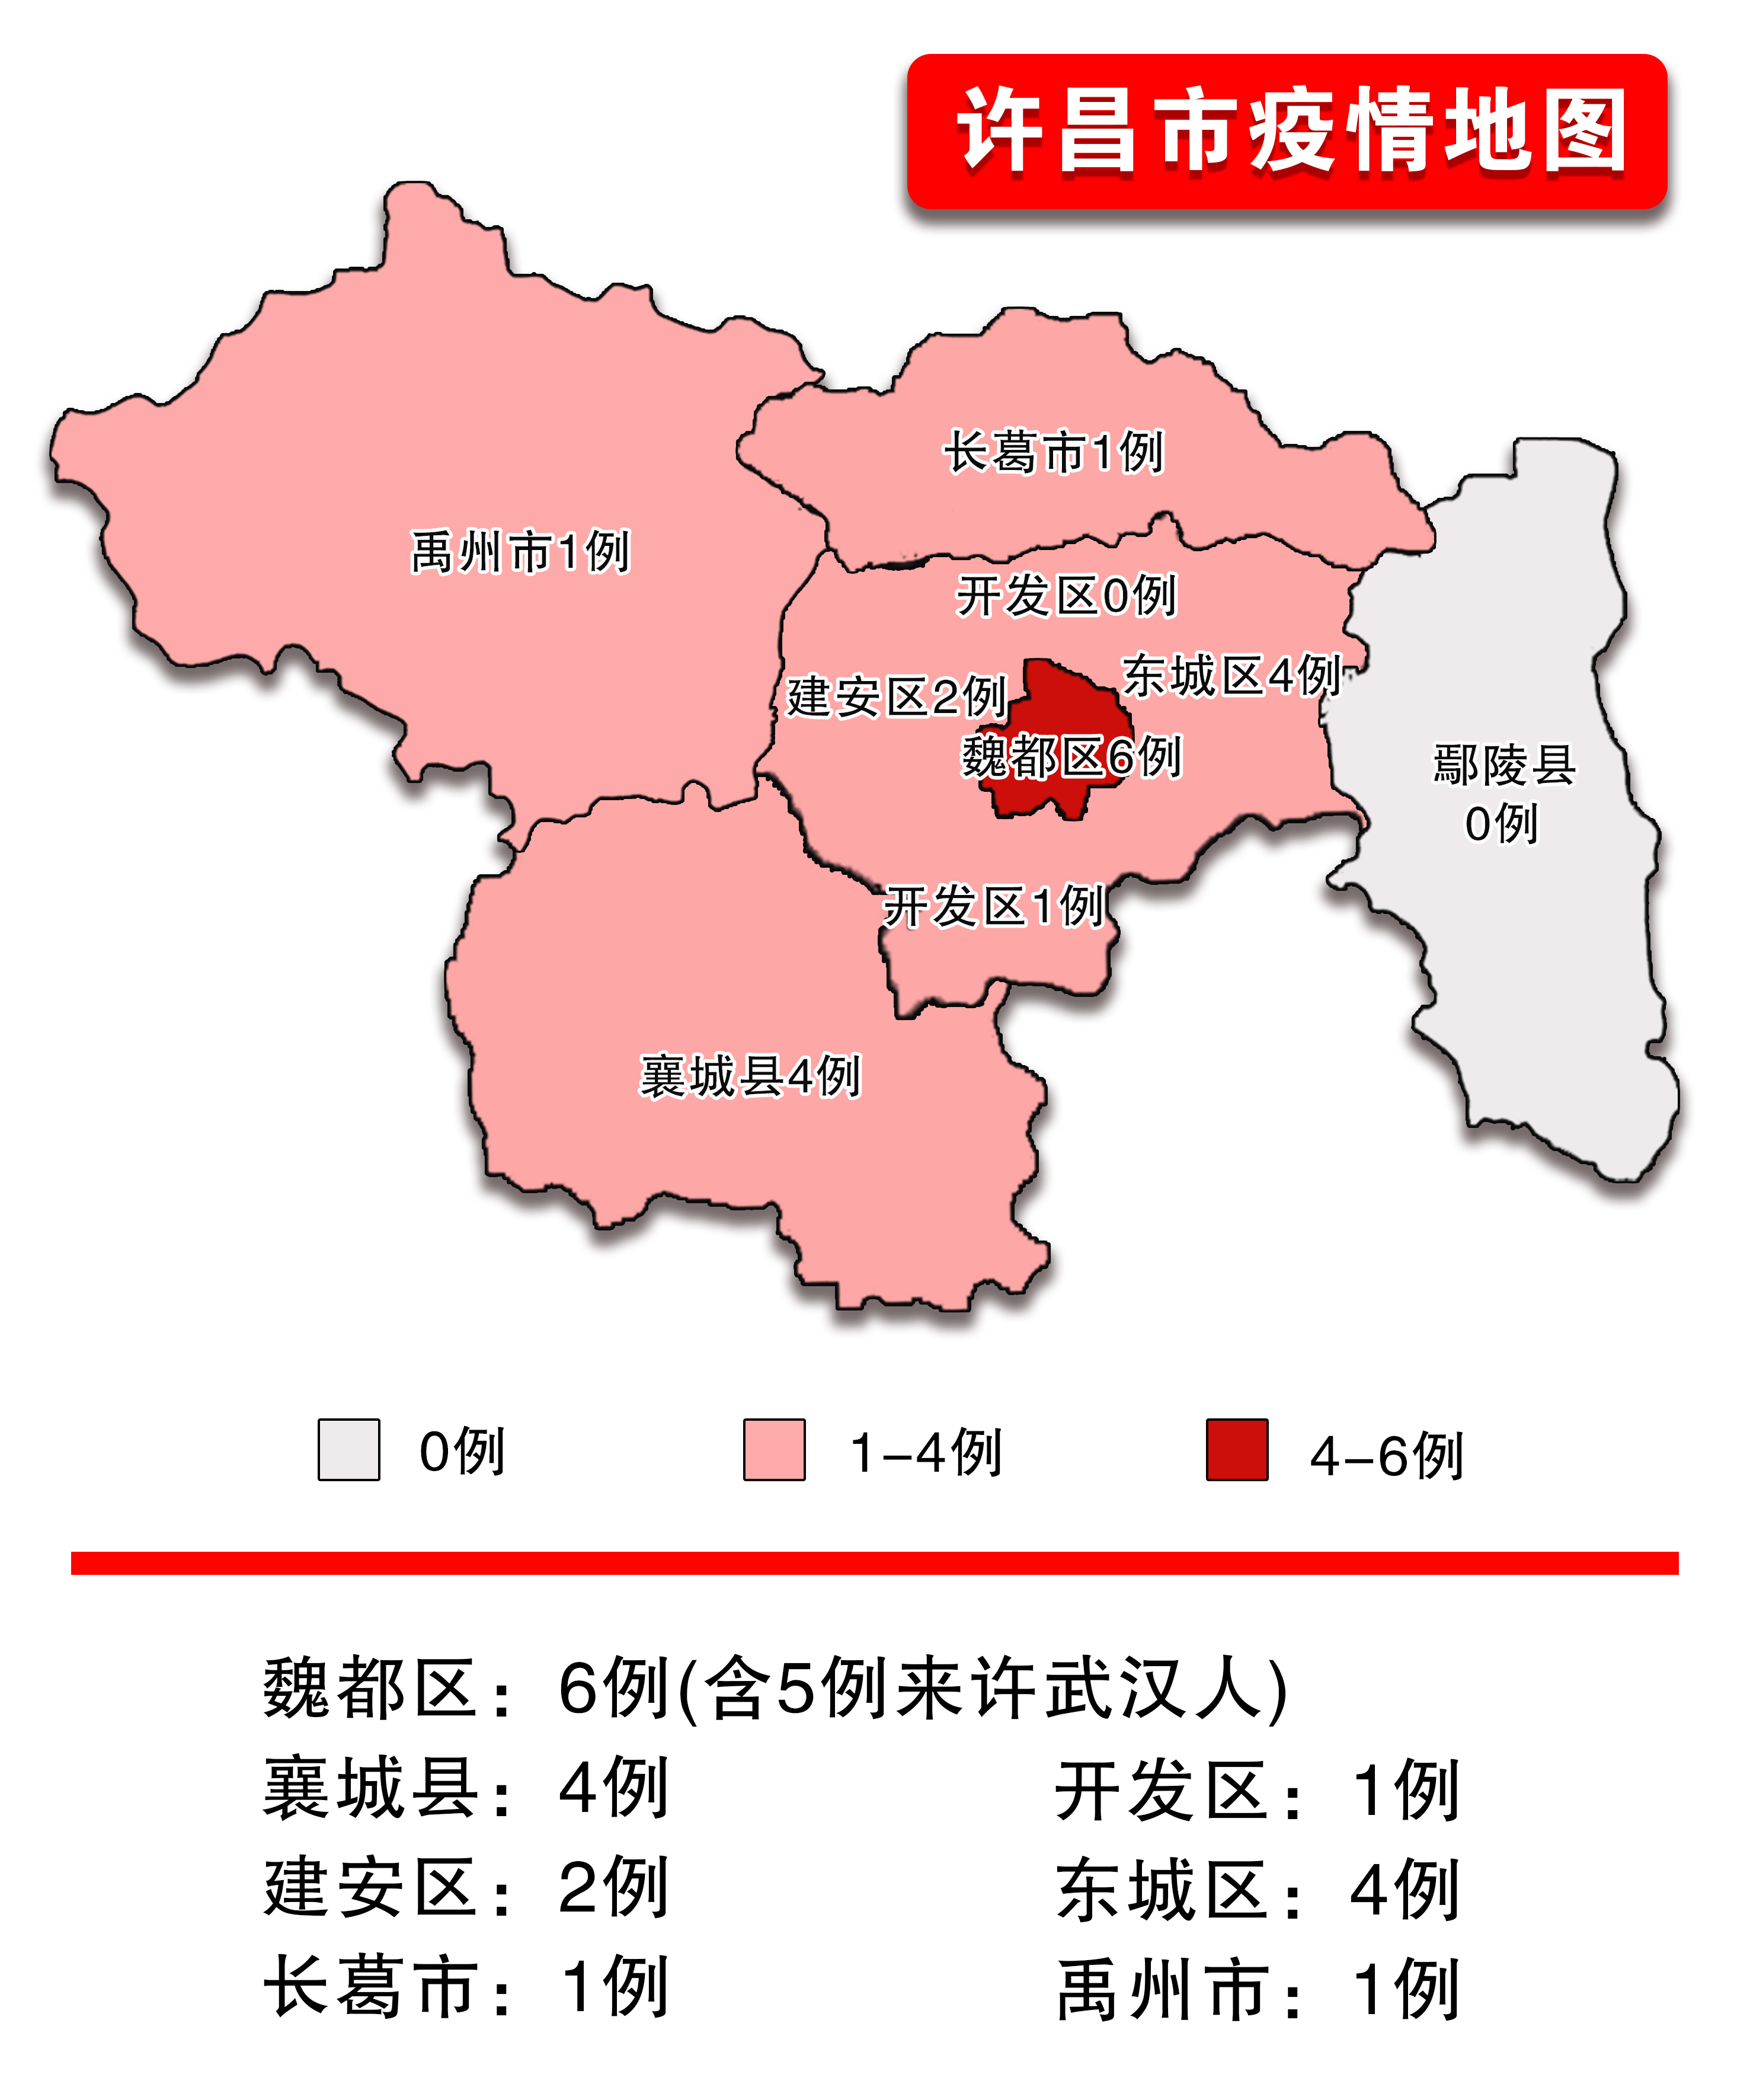 许昌市新增新型冠状病毒感染的肺炎确诊病例4例,累计19例